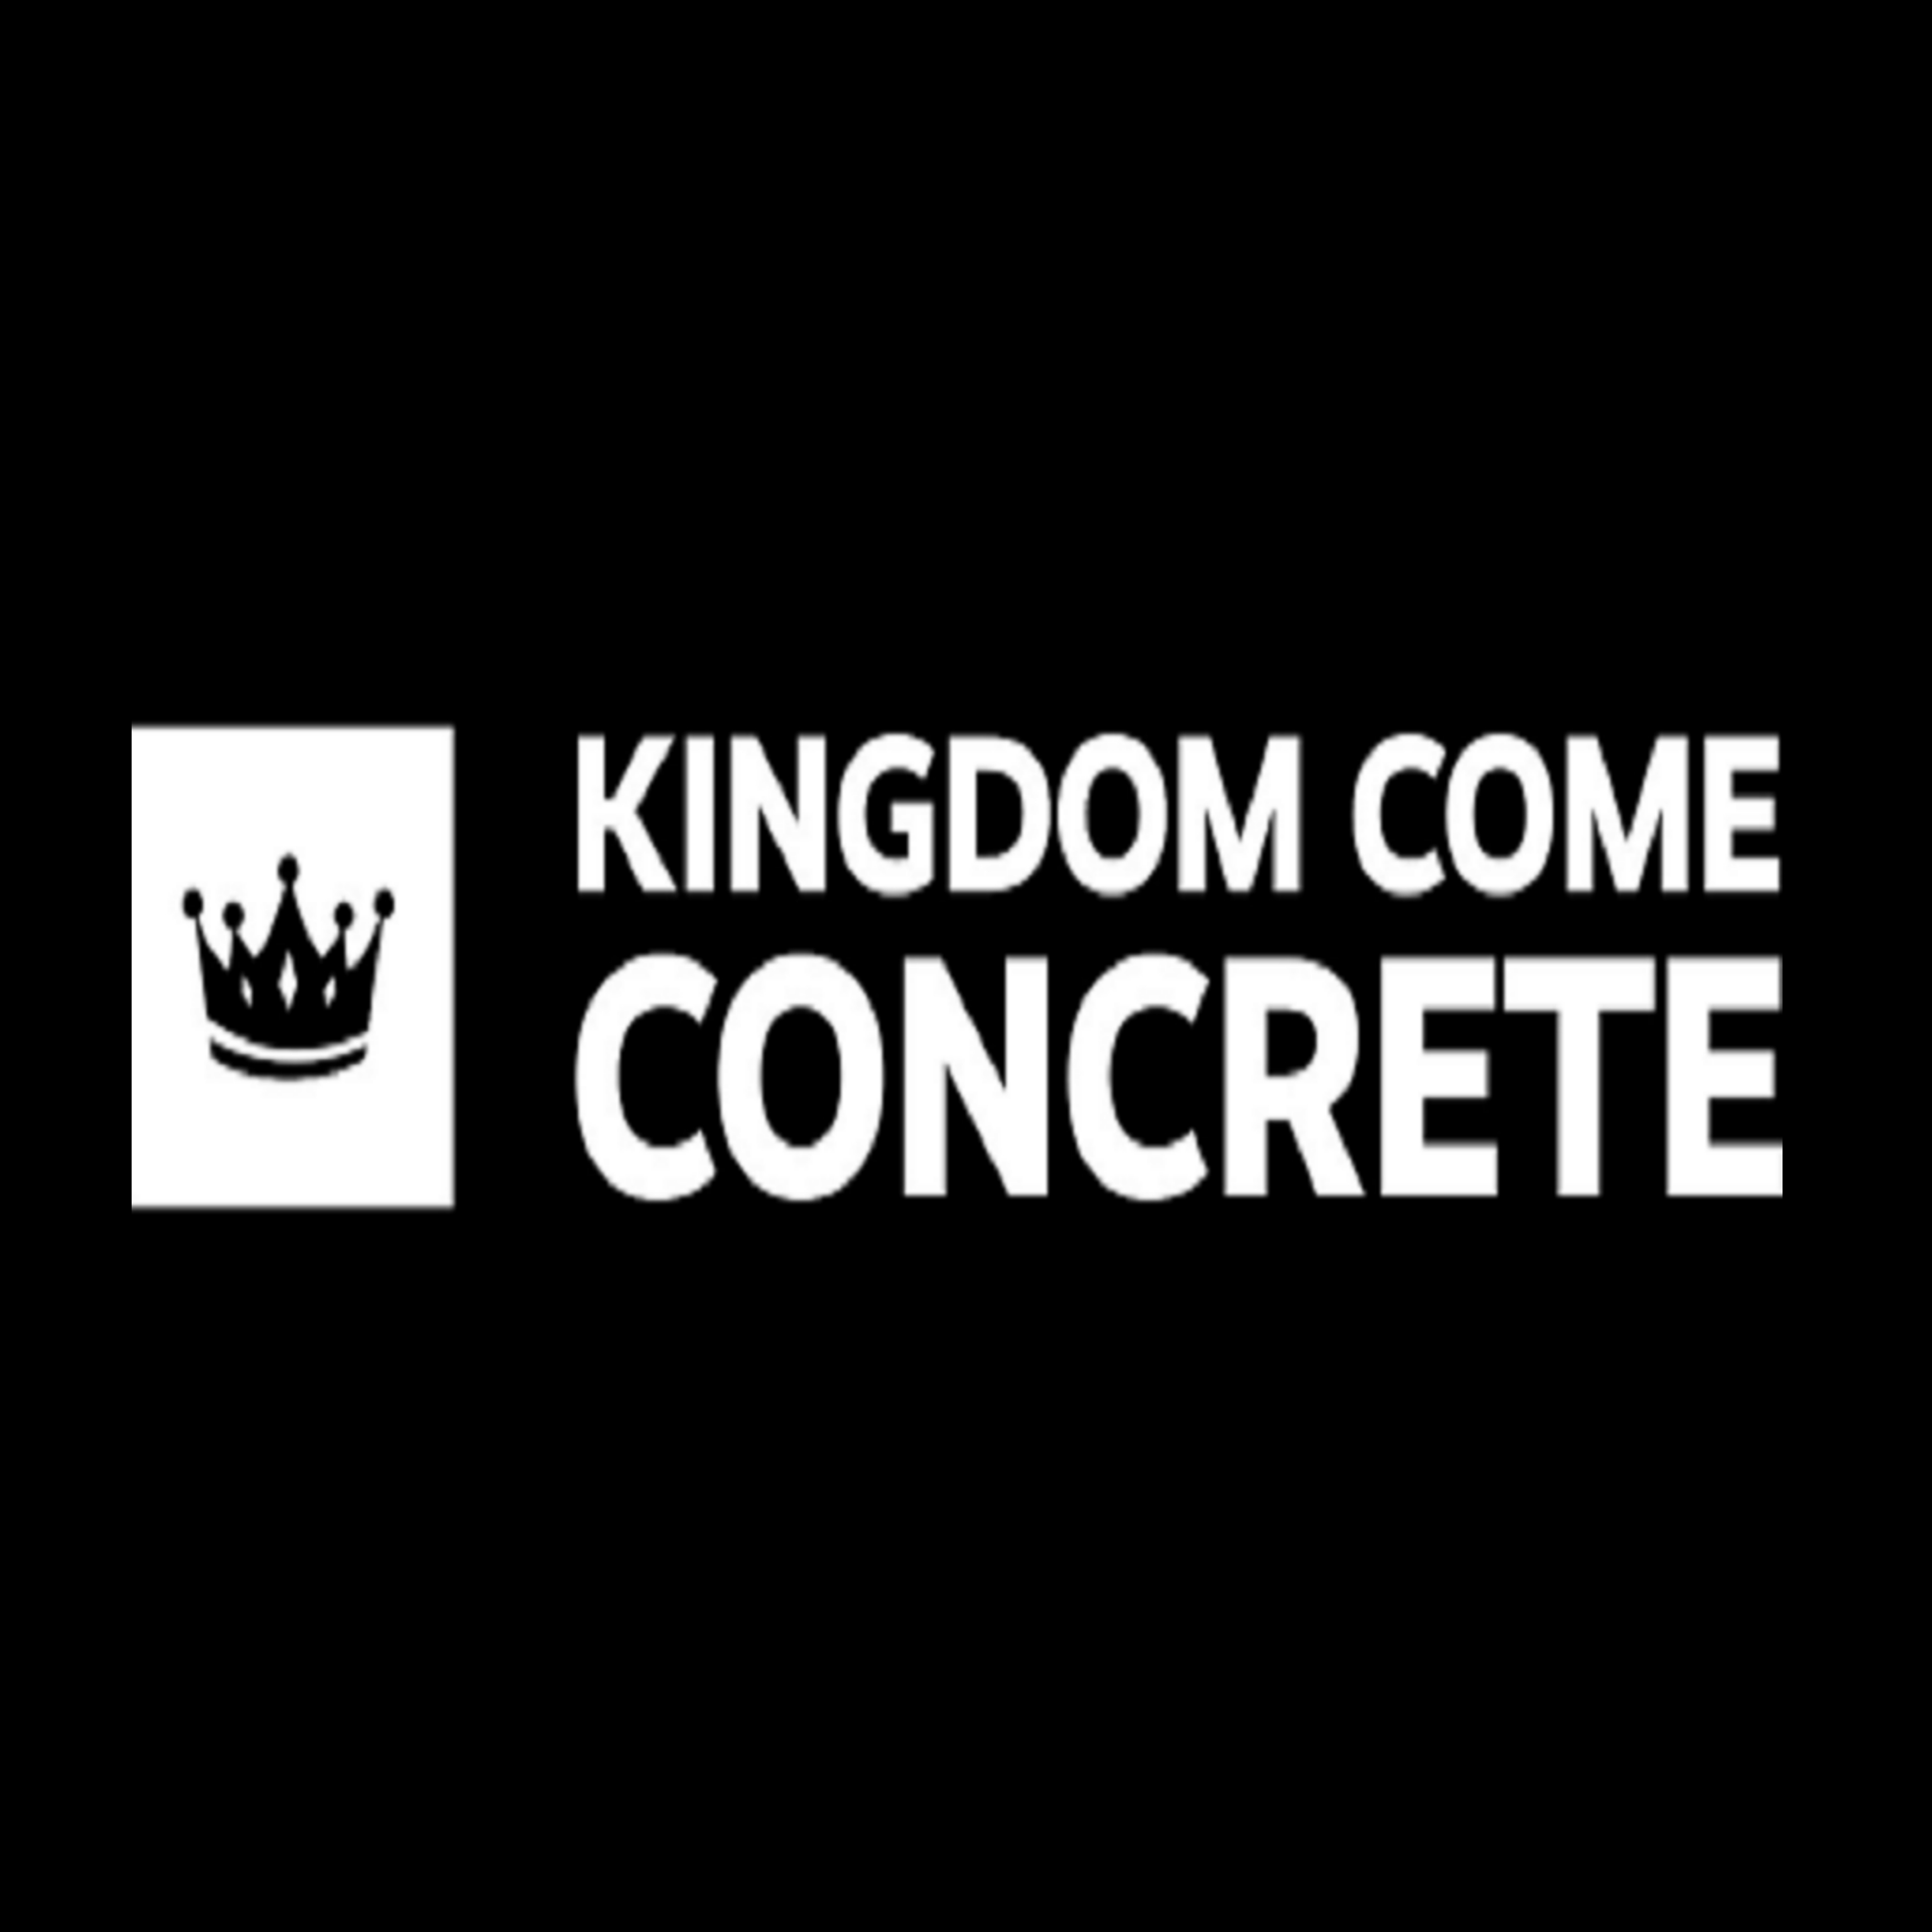 Kingdom Come Concrete LLC